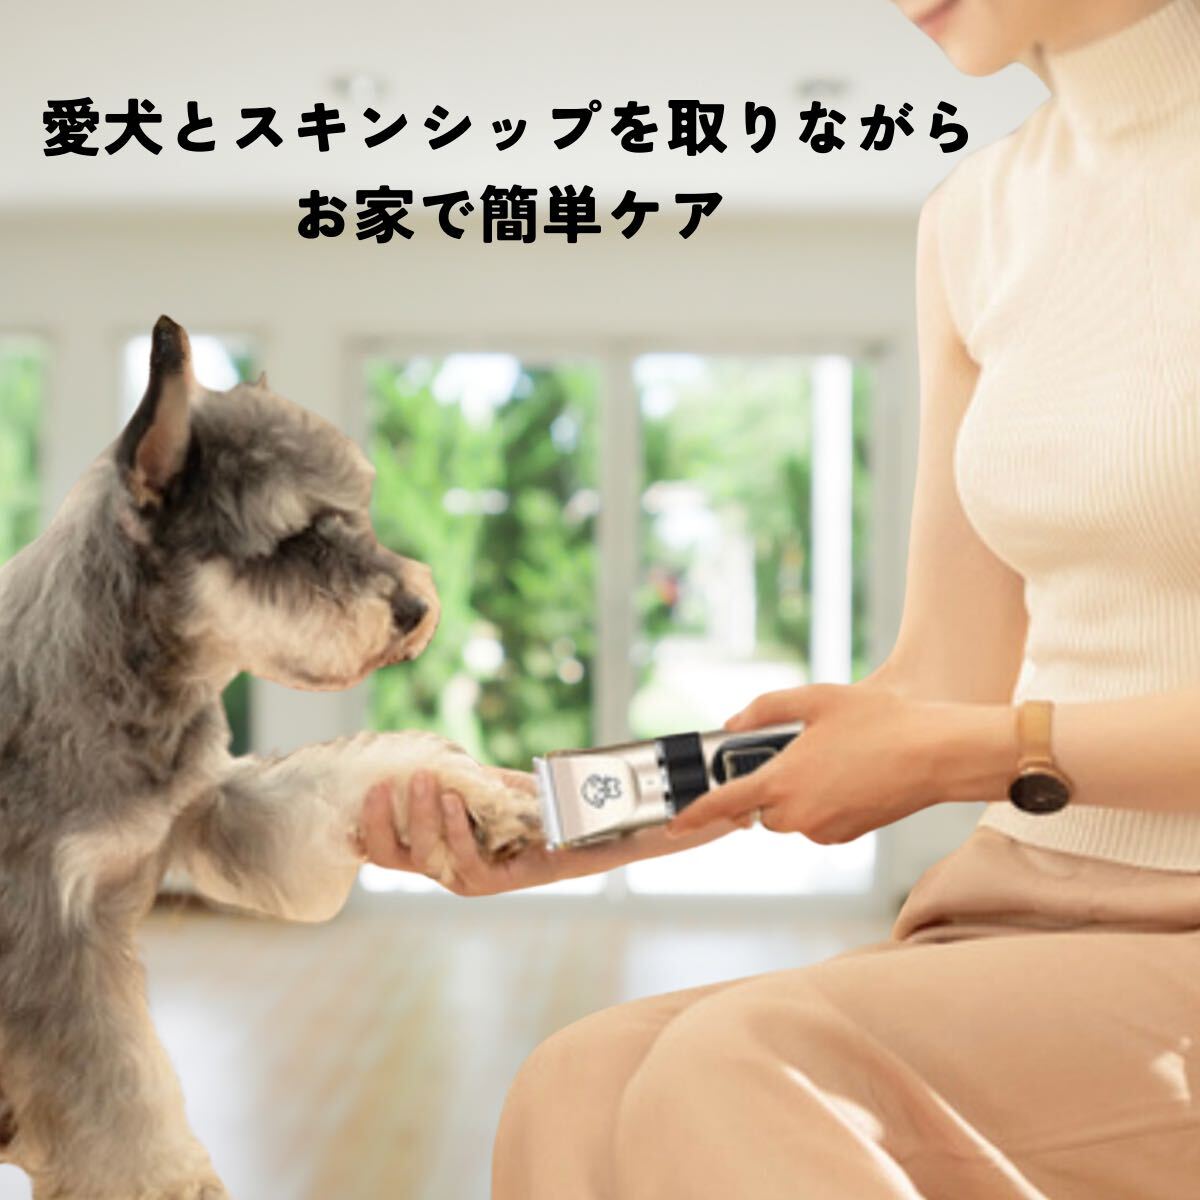 ペット用バリカン 犬 猫 トリミング バリカン ペット用 犬用 猫電動 USB充電式 プロ仕様 トリマー